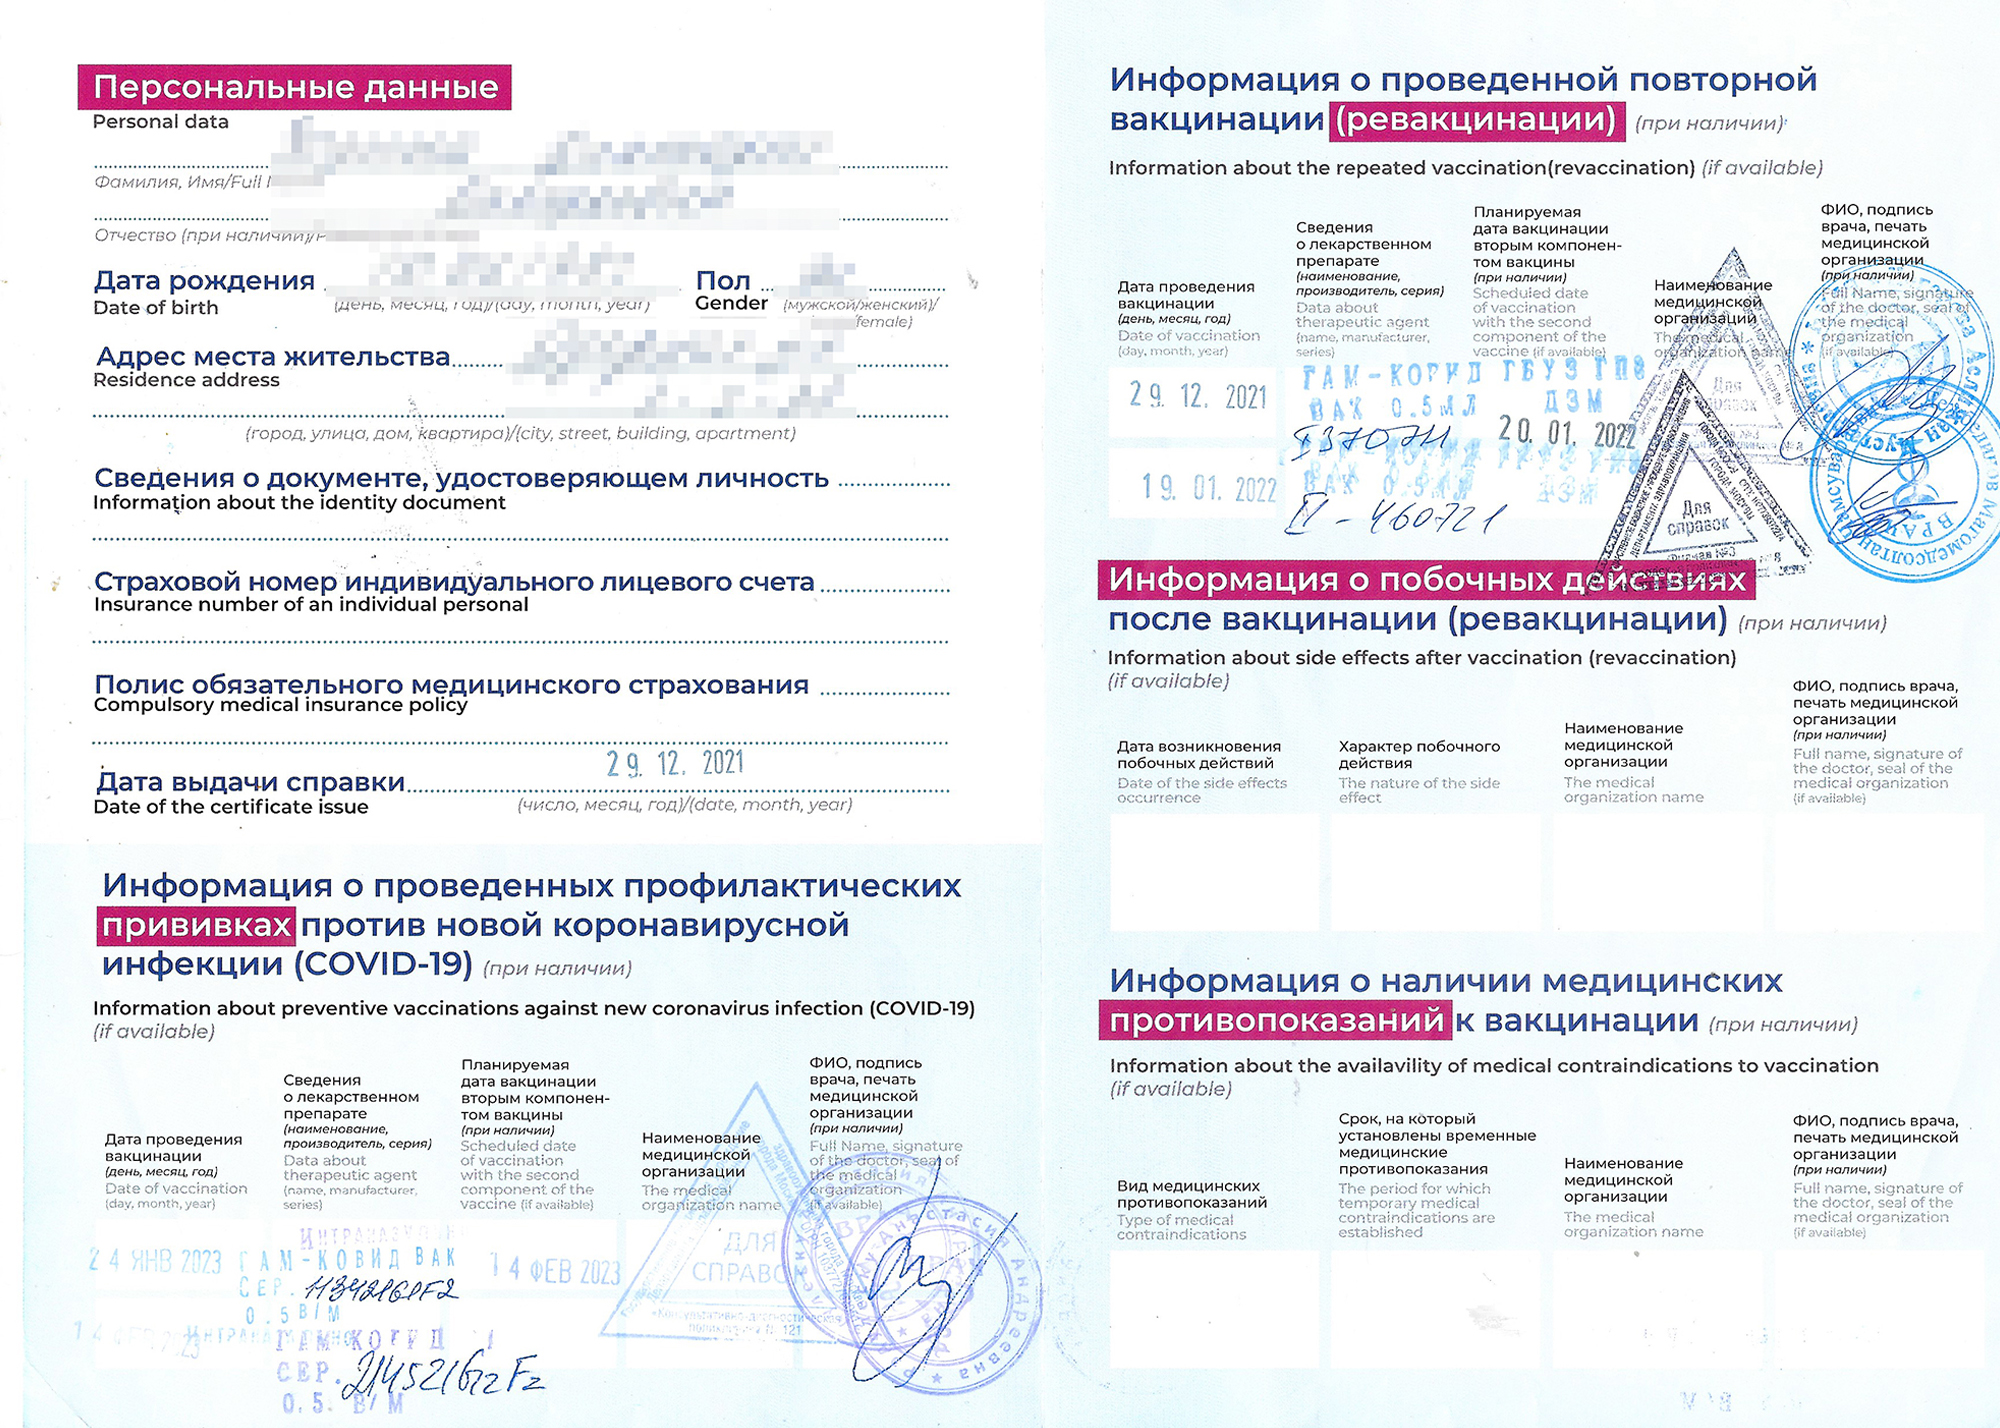 В бумажном сертификате стоят печати «Интраназальная», а записи о вакцинации ничем не отличаются от обычных